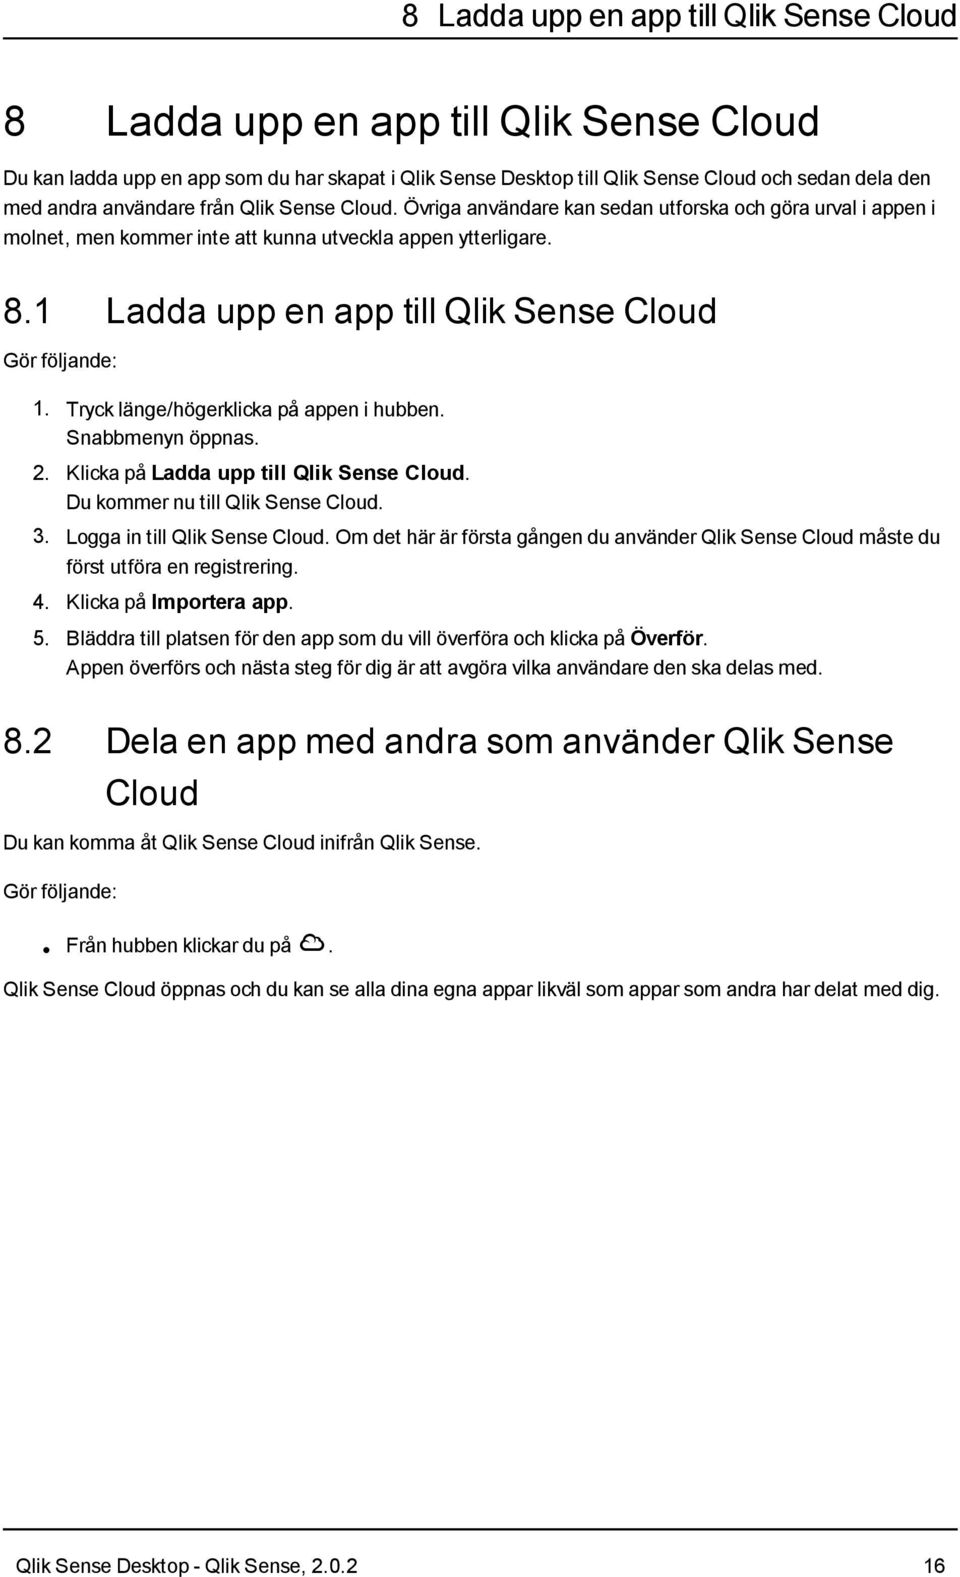 1 Ladda upp en app till Qlik Sense Cloud Gör följande: 1. Tryck länge/högerklicka på appen i hubben. Snabbmenyn öppnas. 2. Klicka på Ladda upp till Qlik Sense Cloud.